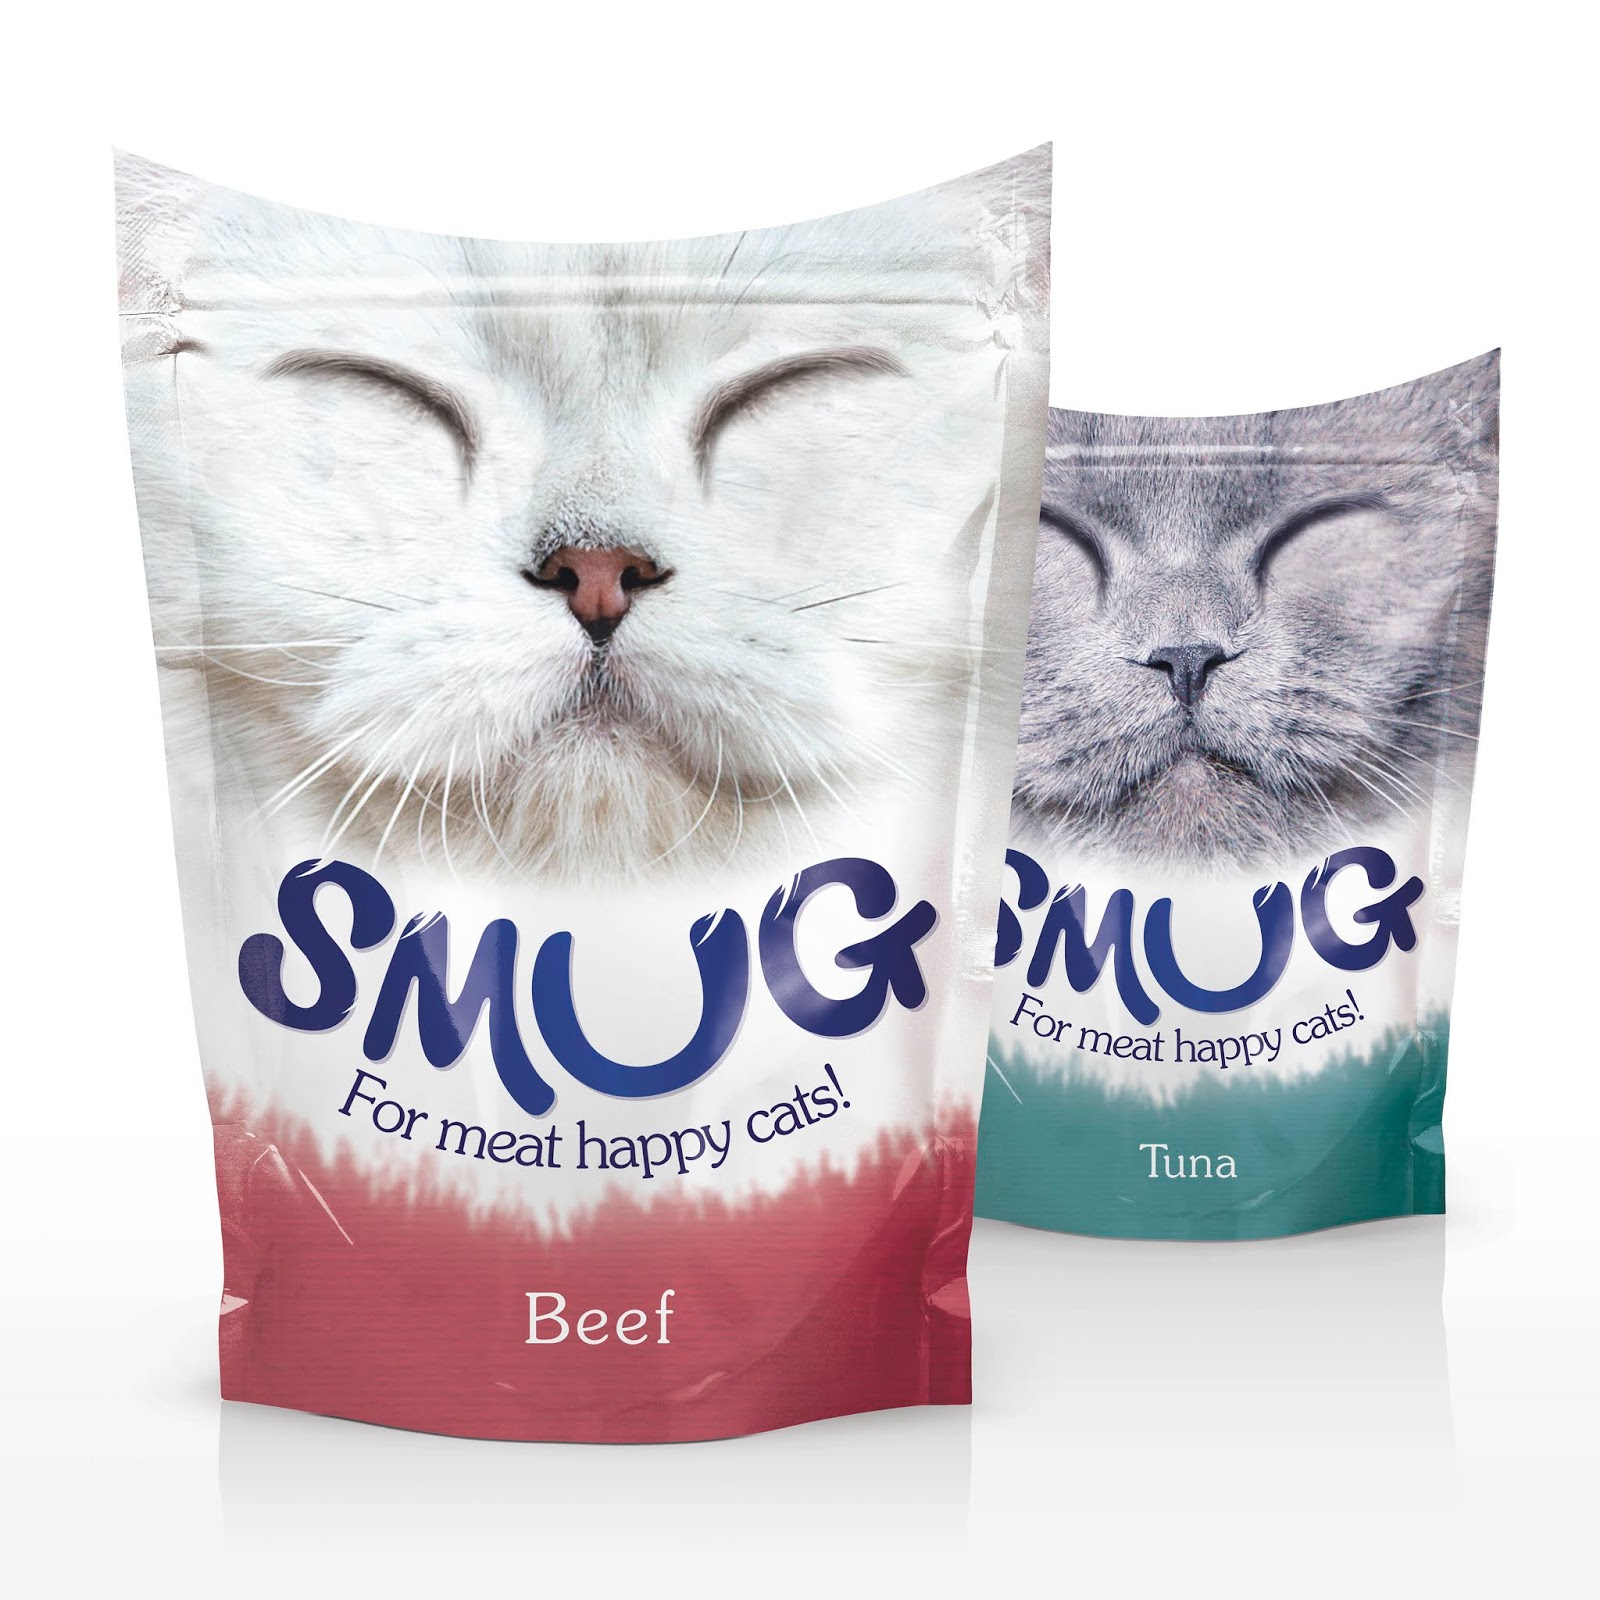 猫粮猫宠物食品西安oe欧亿体育app官方下载
品牌包装设计